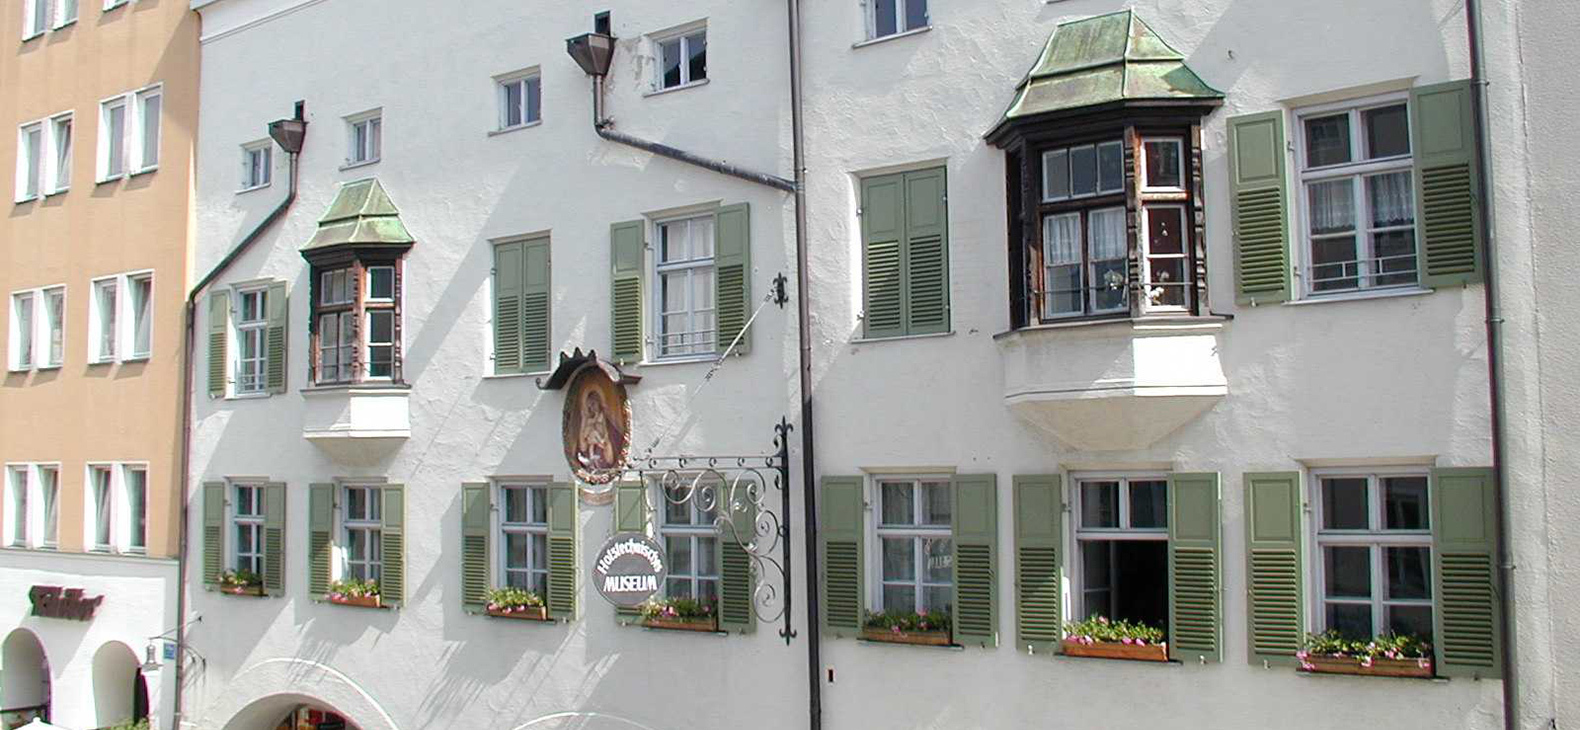 Ein weißverputztes historisches Bürgerhaus im Inn-Salzach-Stil mit Sprossen-Fenstern mit grünen Fensterläden, zwei Erkern und Regenrohren.